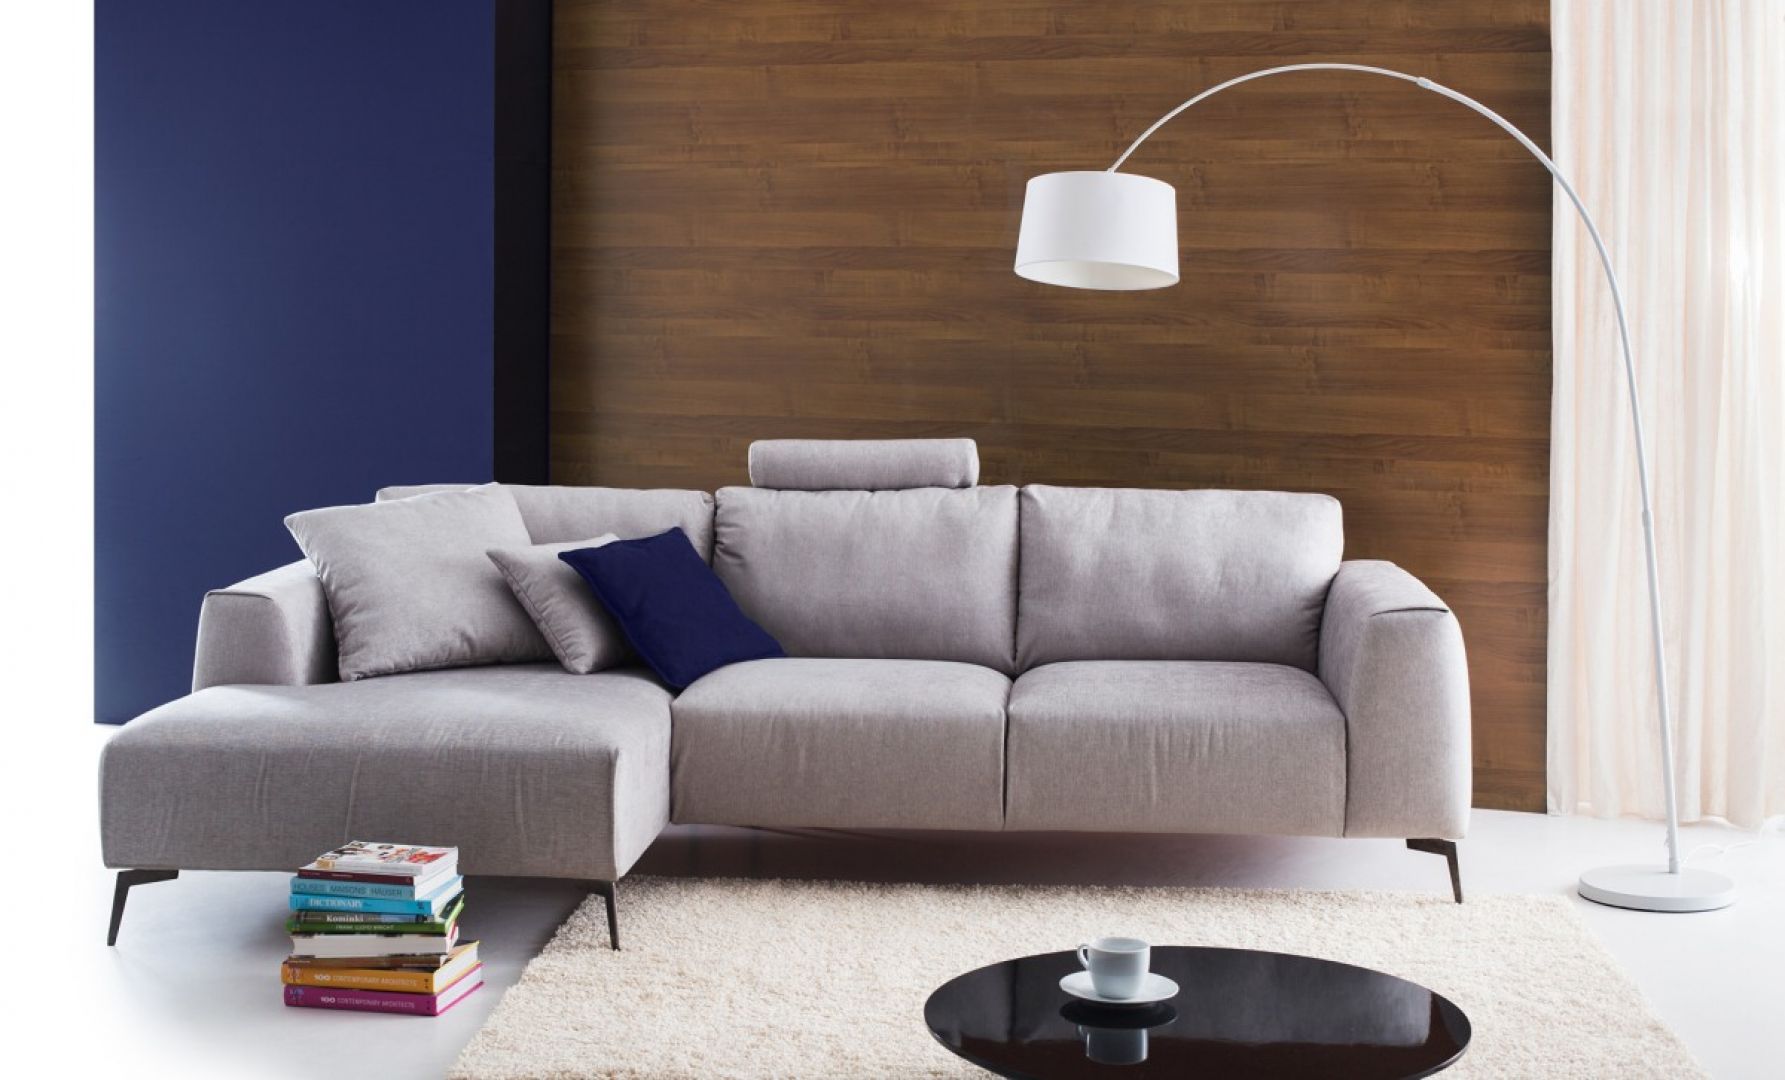 Eleganckie, włoskie piękno. Tak najprościej można opisać mebel Calvaro marki Etap Sofa. Miły dla oka, nieskomplikowany design, stylowe przeszycia, wysoki komfort siedzenia, wyjątkowa forma nóg. Fot. Etap Sofa